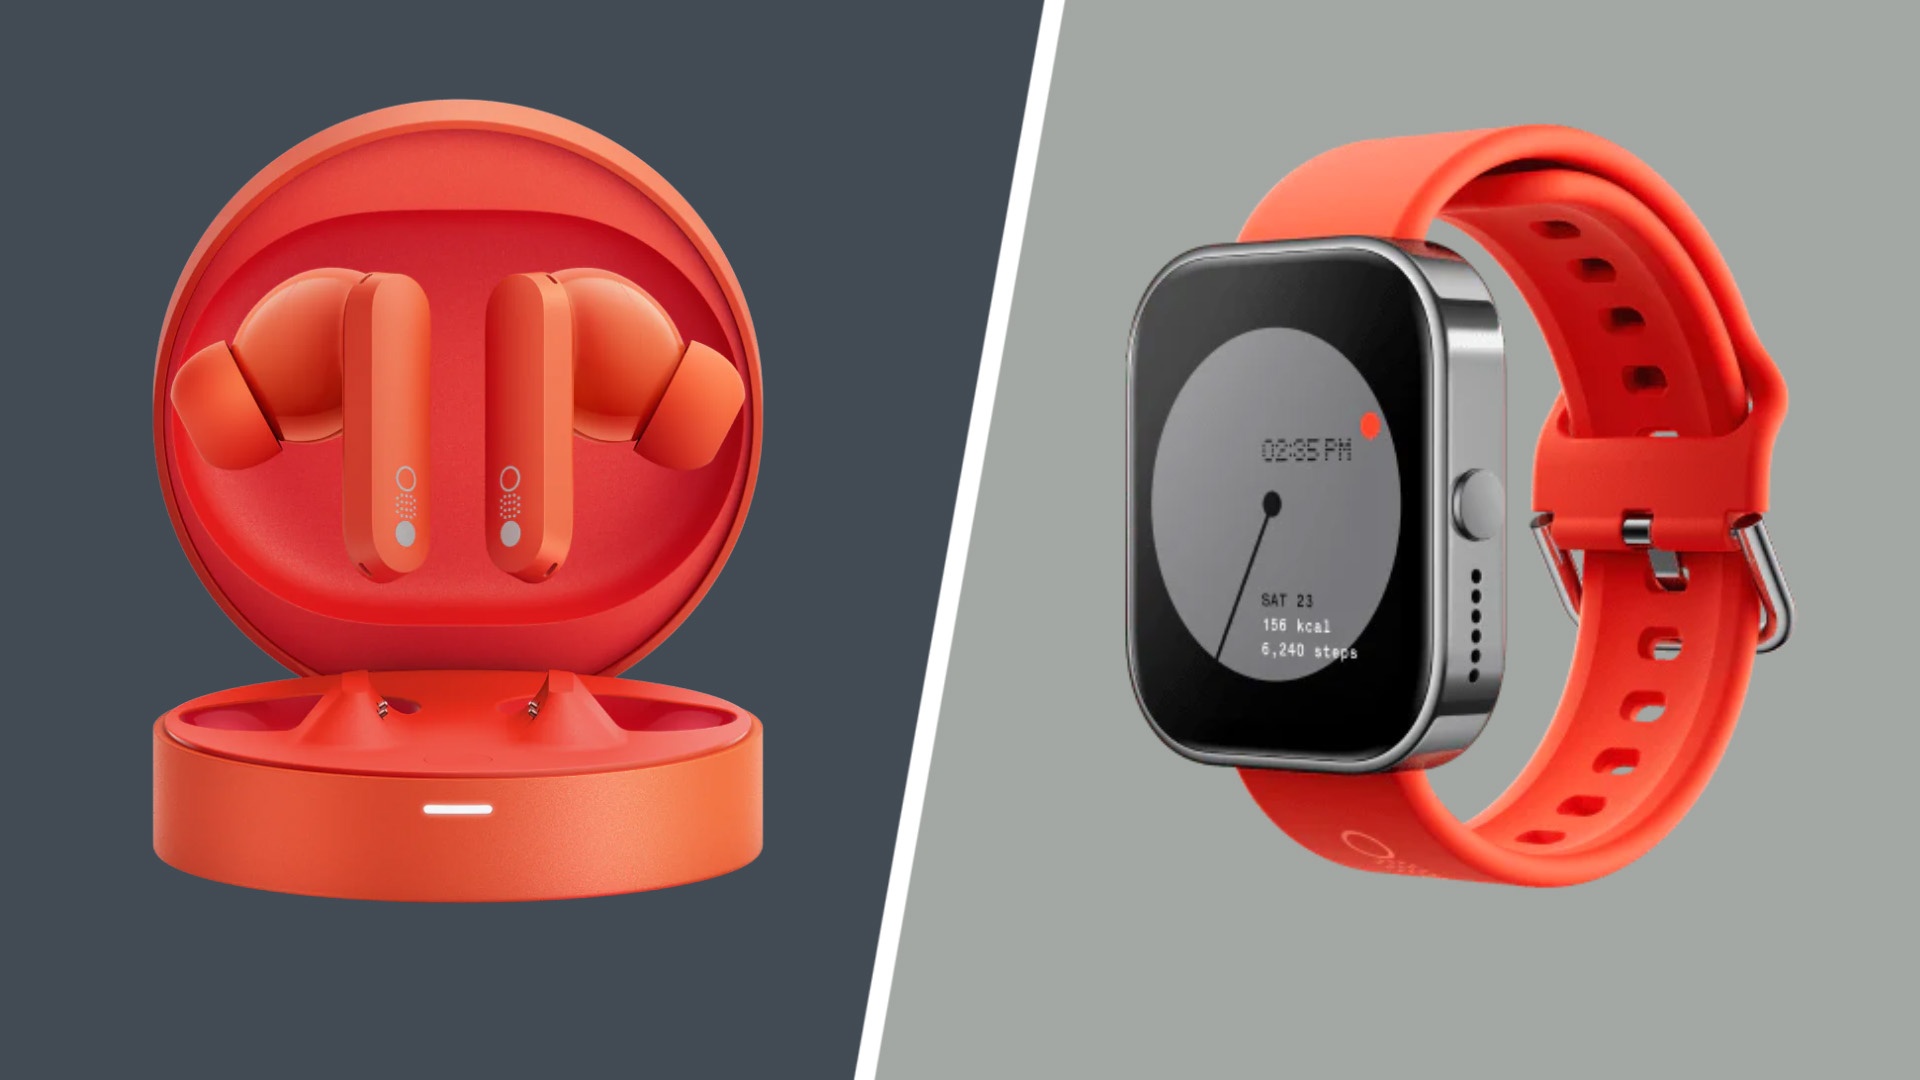 #13 Tage Akkulaufzeit und Always-On-Display – Handy-Hersteller kündigt Smartwatch und In-Ears für kleines Geld an